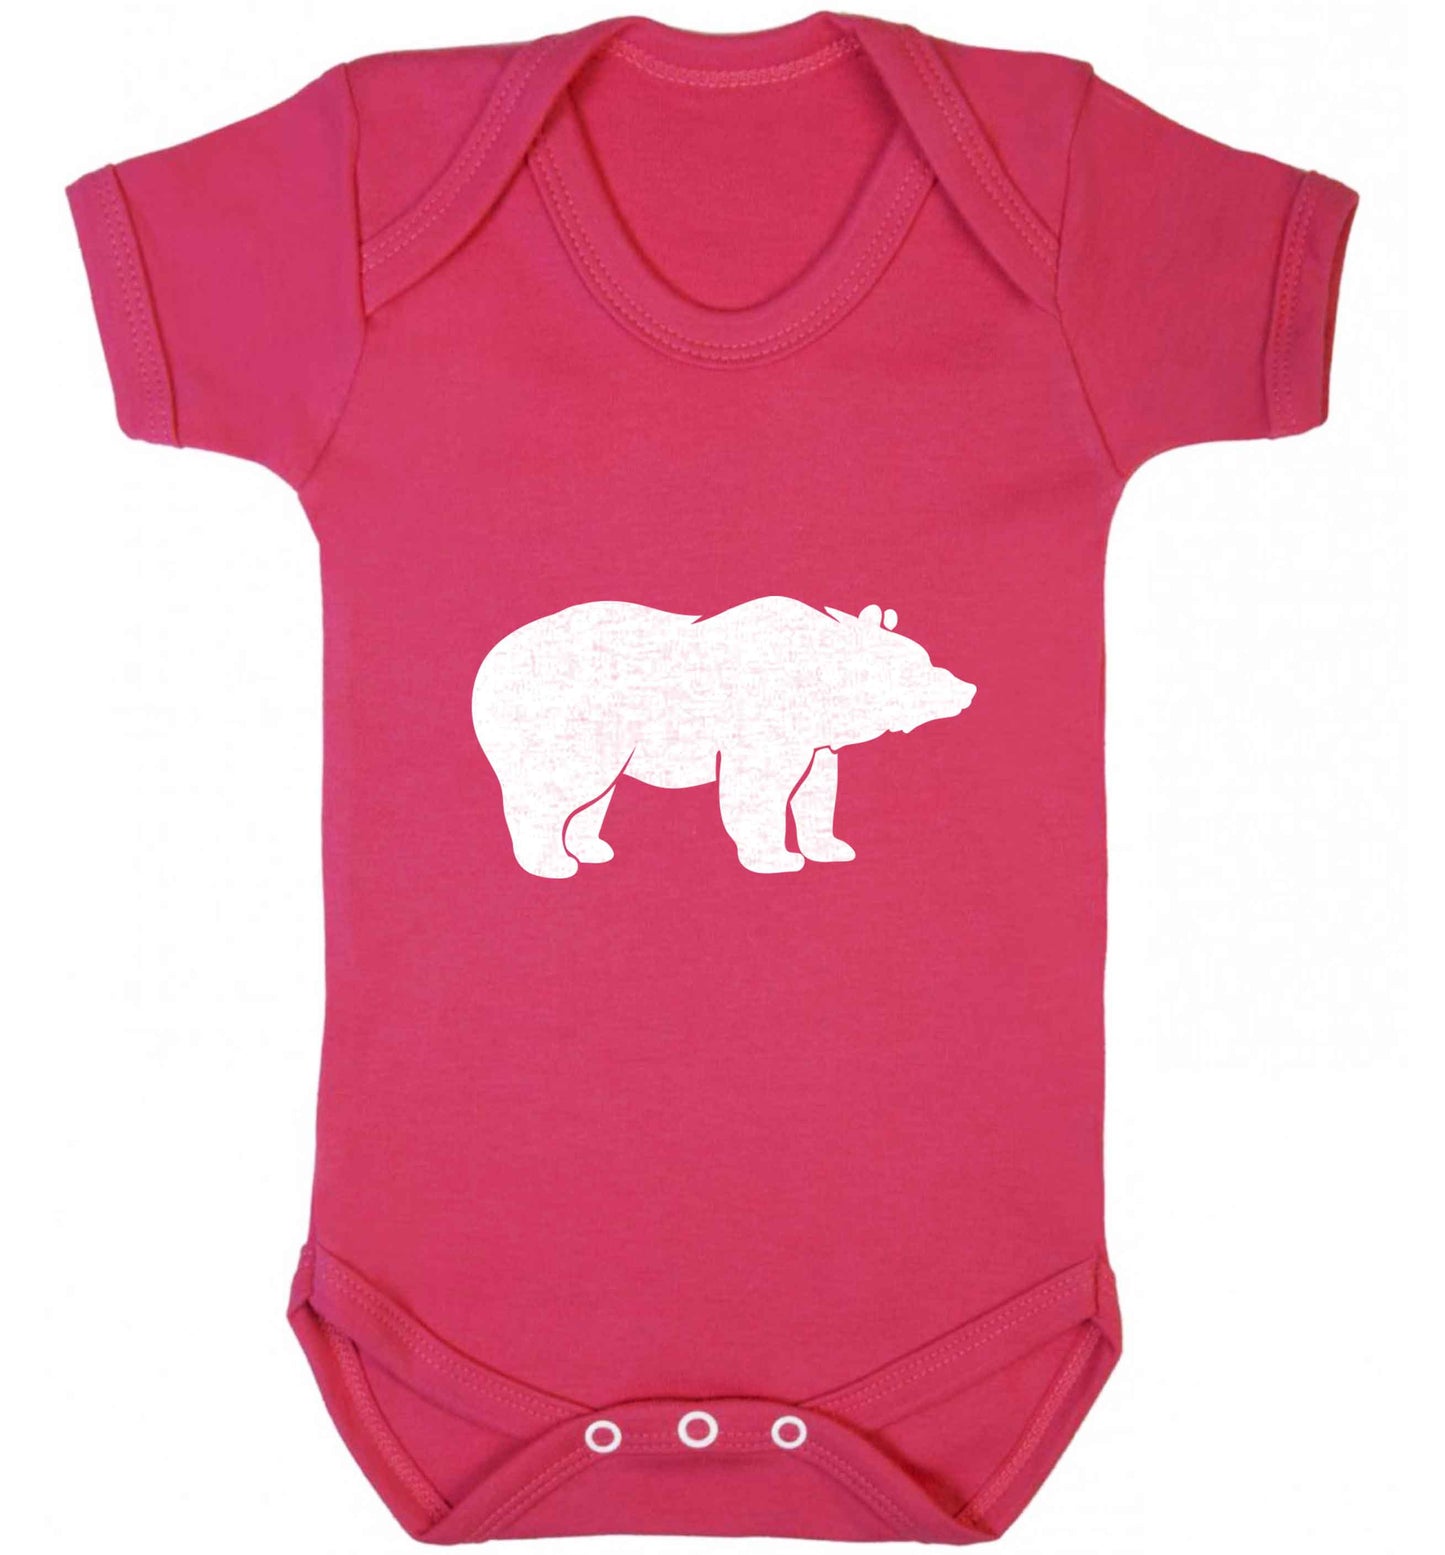 Blue bear baby vest dark pink 18-24 months